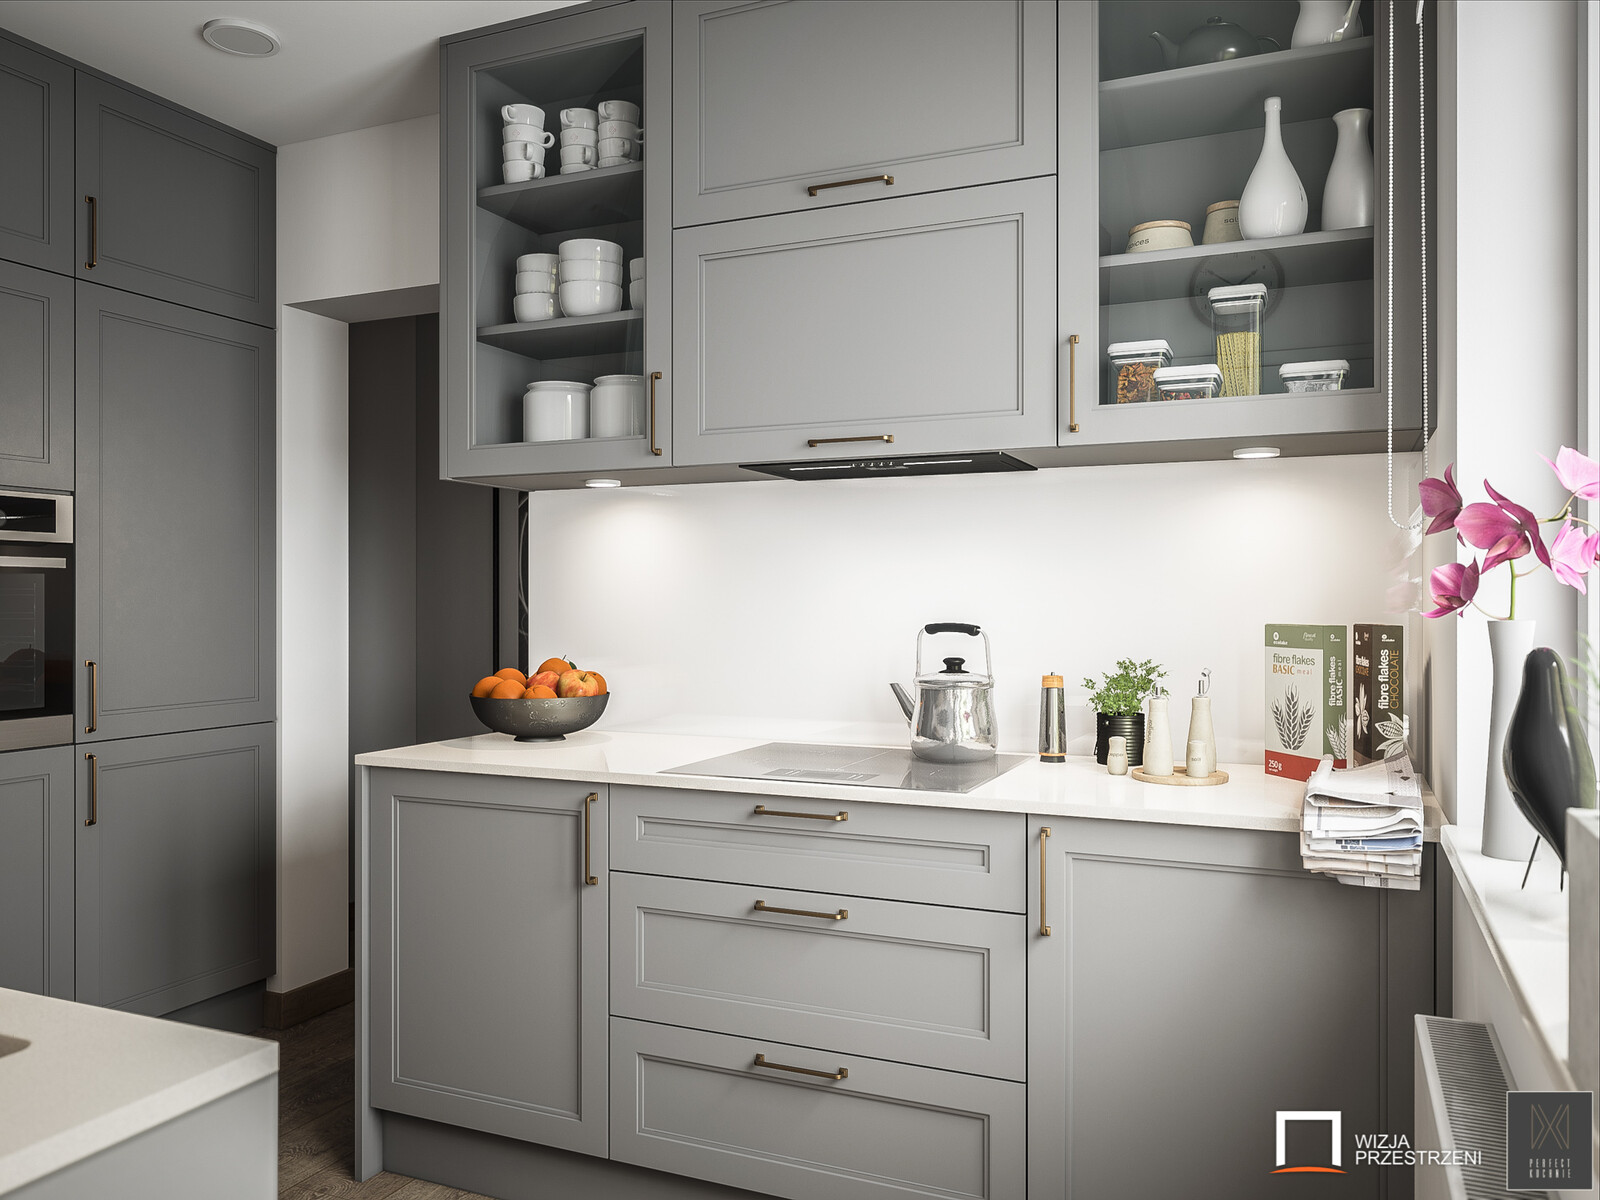 Kitchen - Traditional Style - Interior ArchViz - UE4 / Unreal Engine